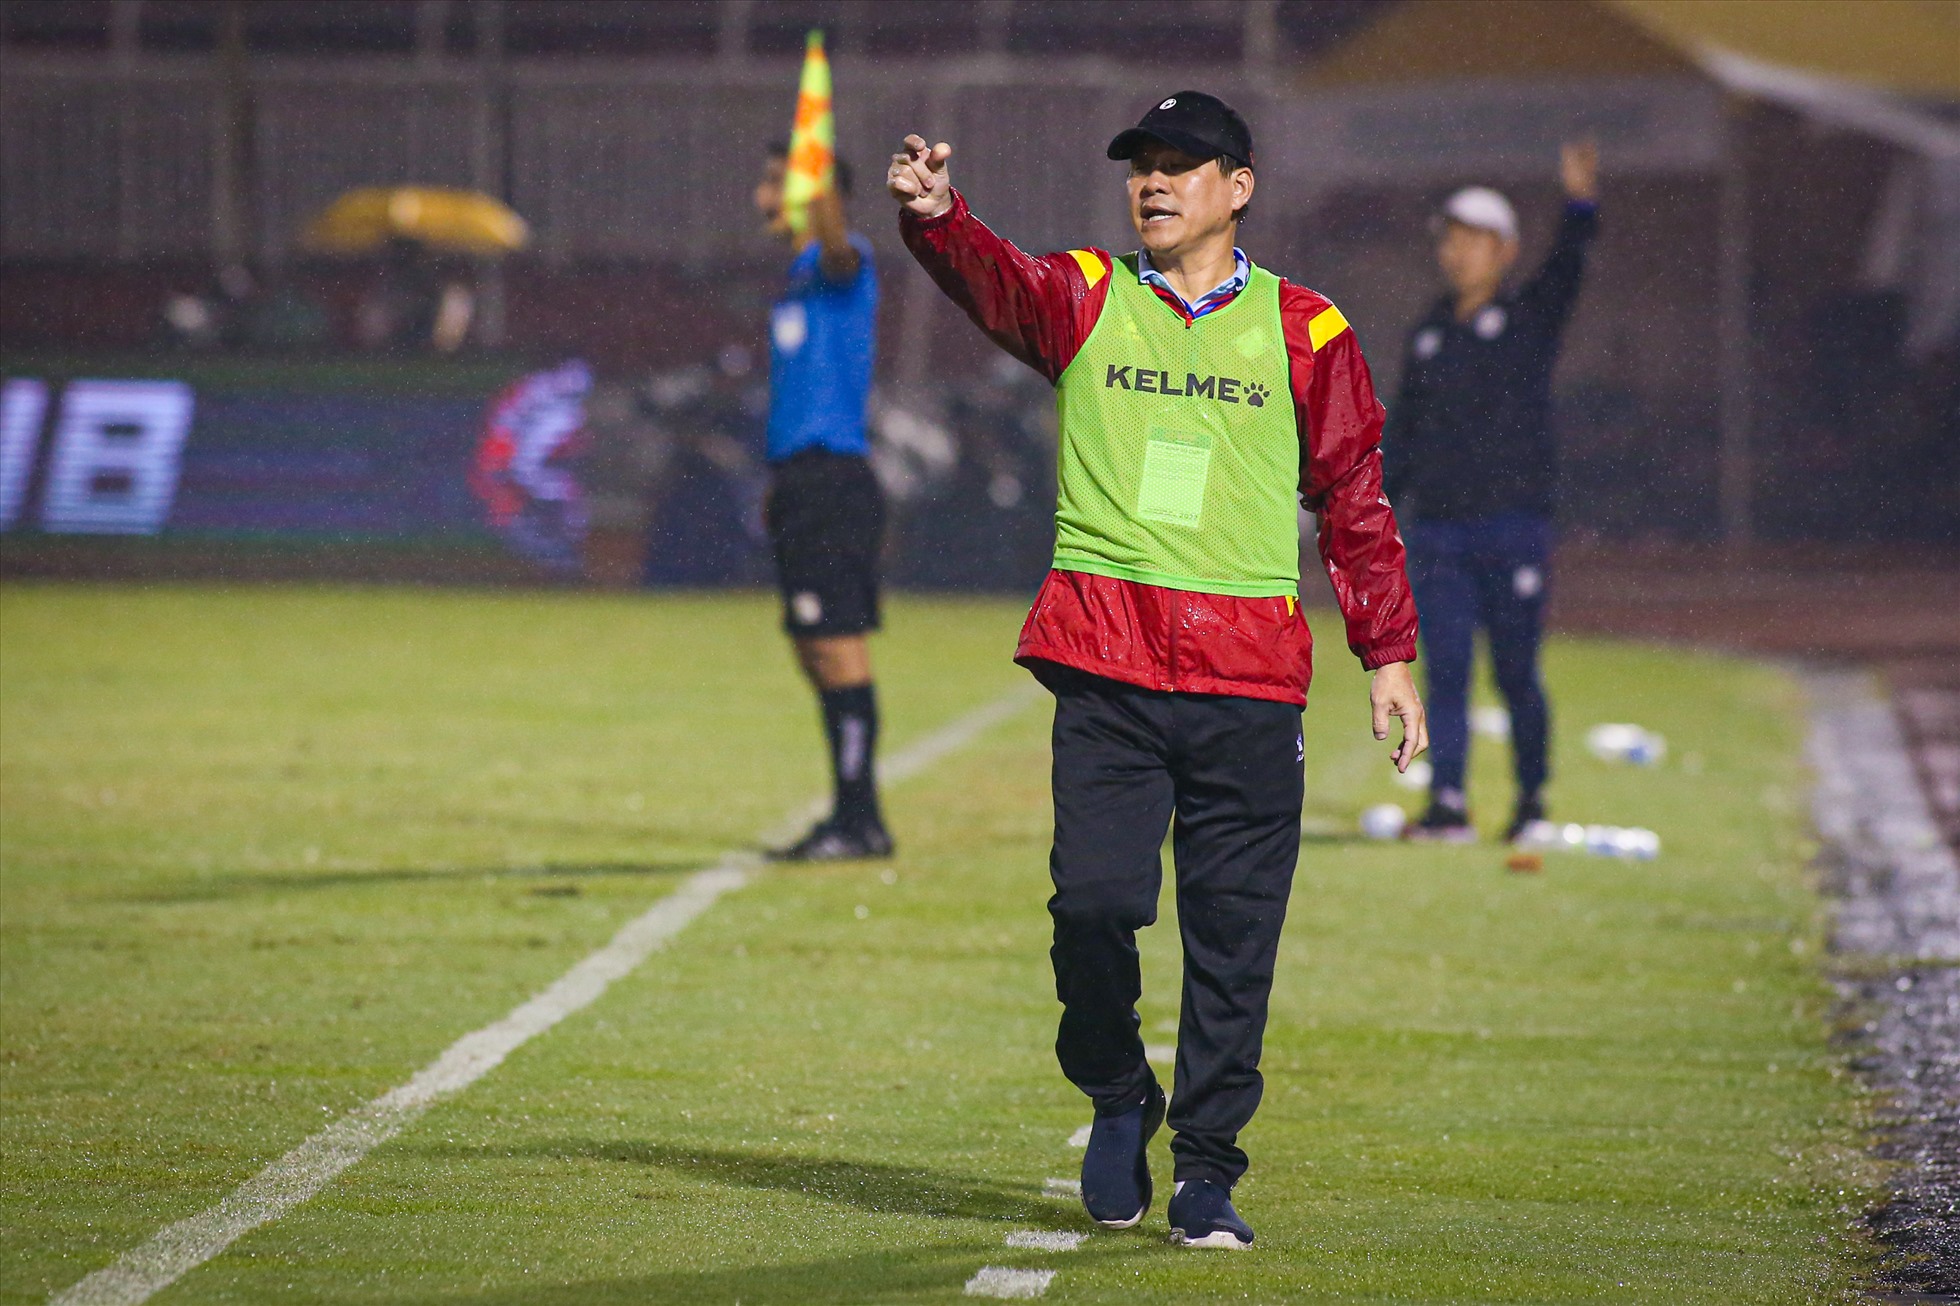 Trận thua đậm trước Hà Nội khiến TPHCM tiếp tục đứng cuối bảng xếp hạng V.League 2022. Huấn luyện viên Vũ Tiến Thành vẫn còn nhiều việc phải làm để giúp TPHCM sớm thoát khỏi nhóm nguy hiểm và giành vé trụ hạng ở mùa giải năm nay.